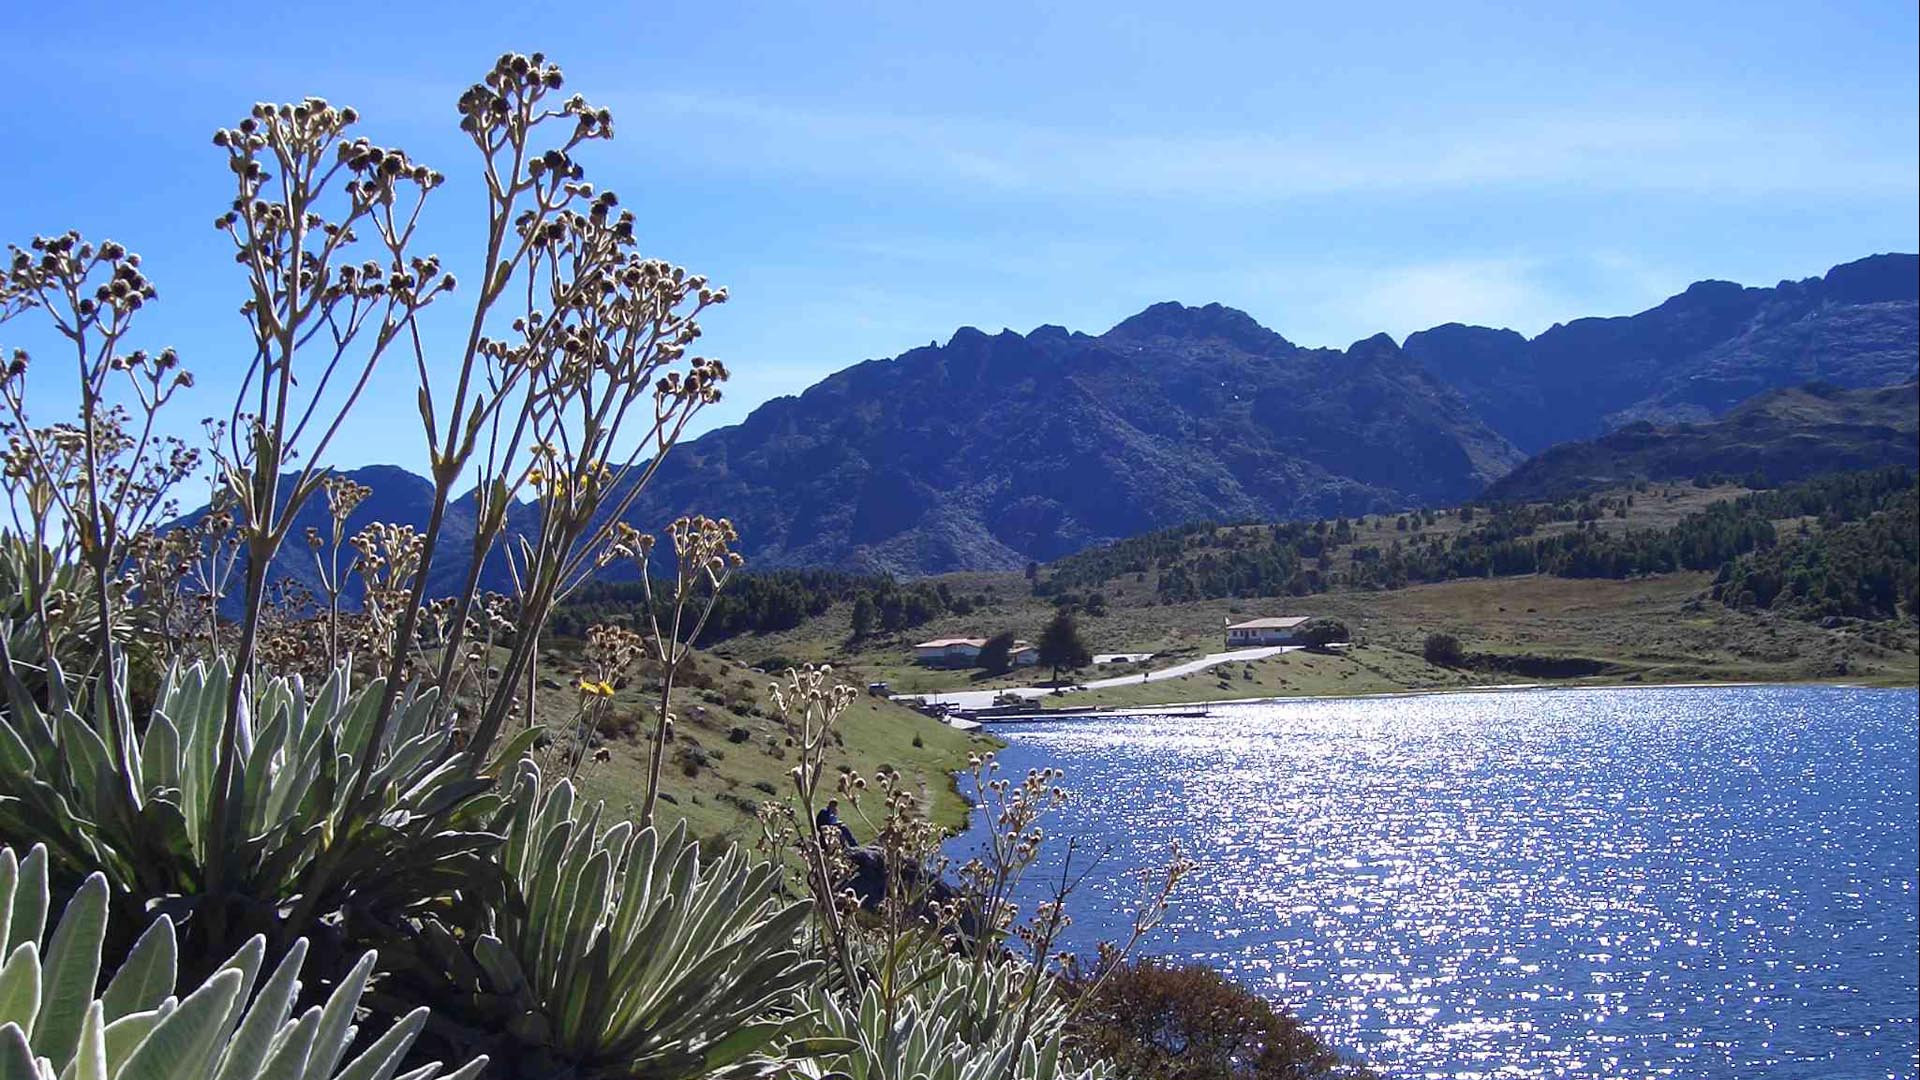 El estado andino recibió 130,3 billones de bolívares gracias al sector turístico